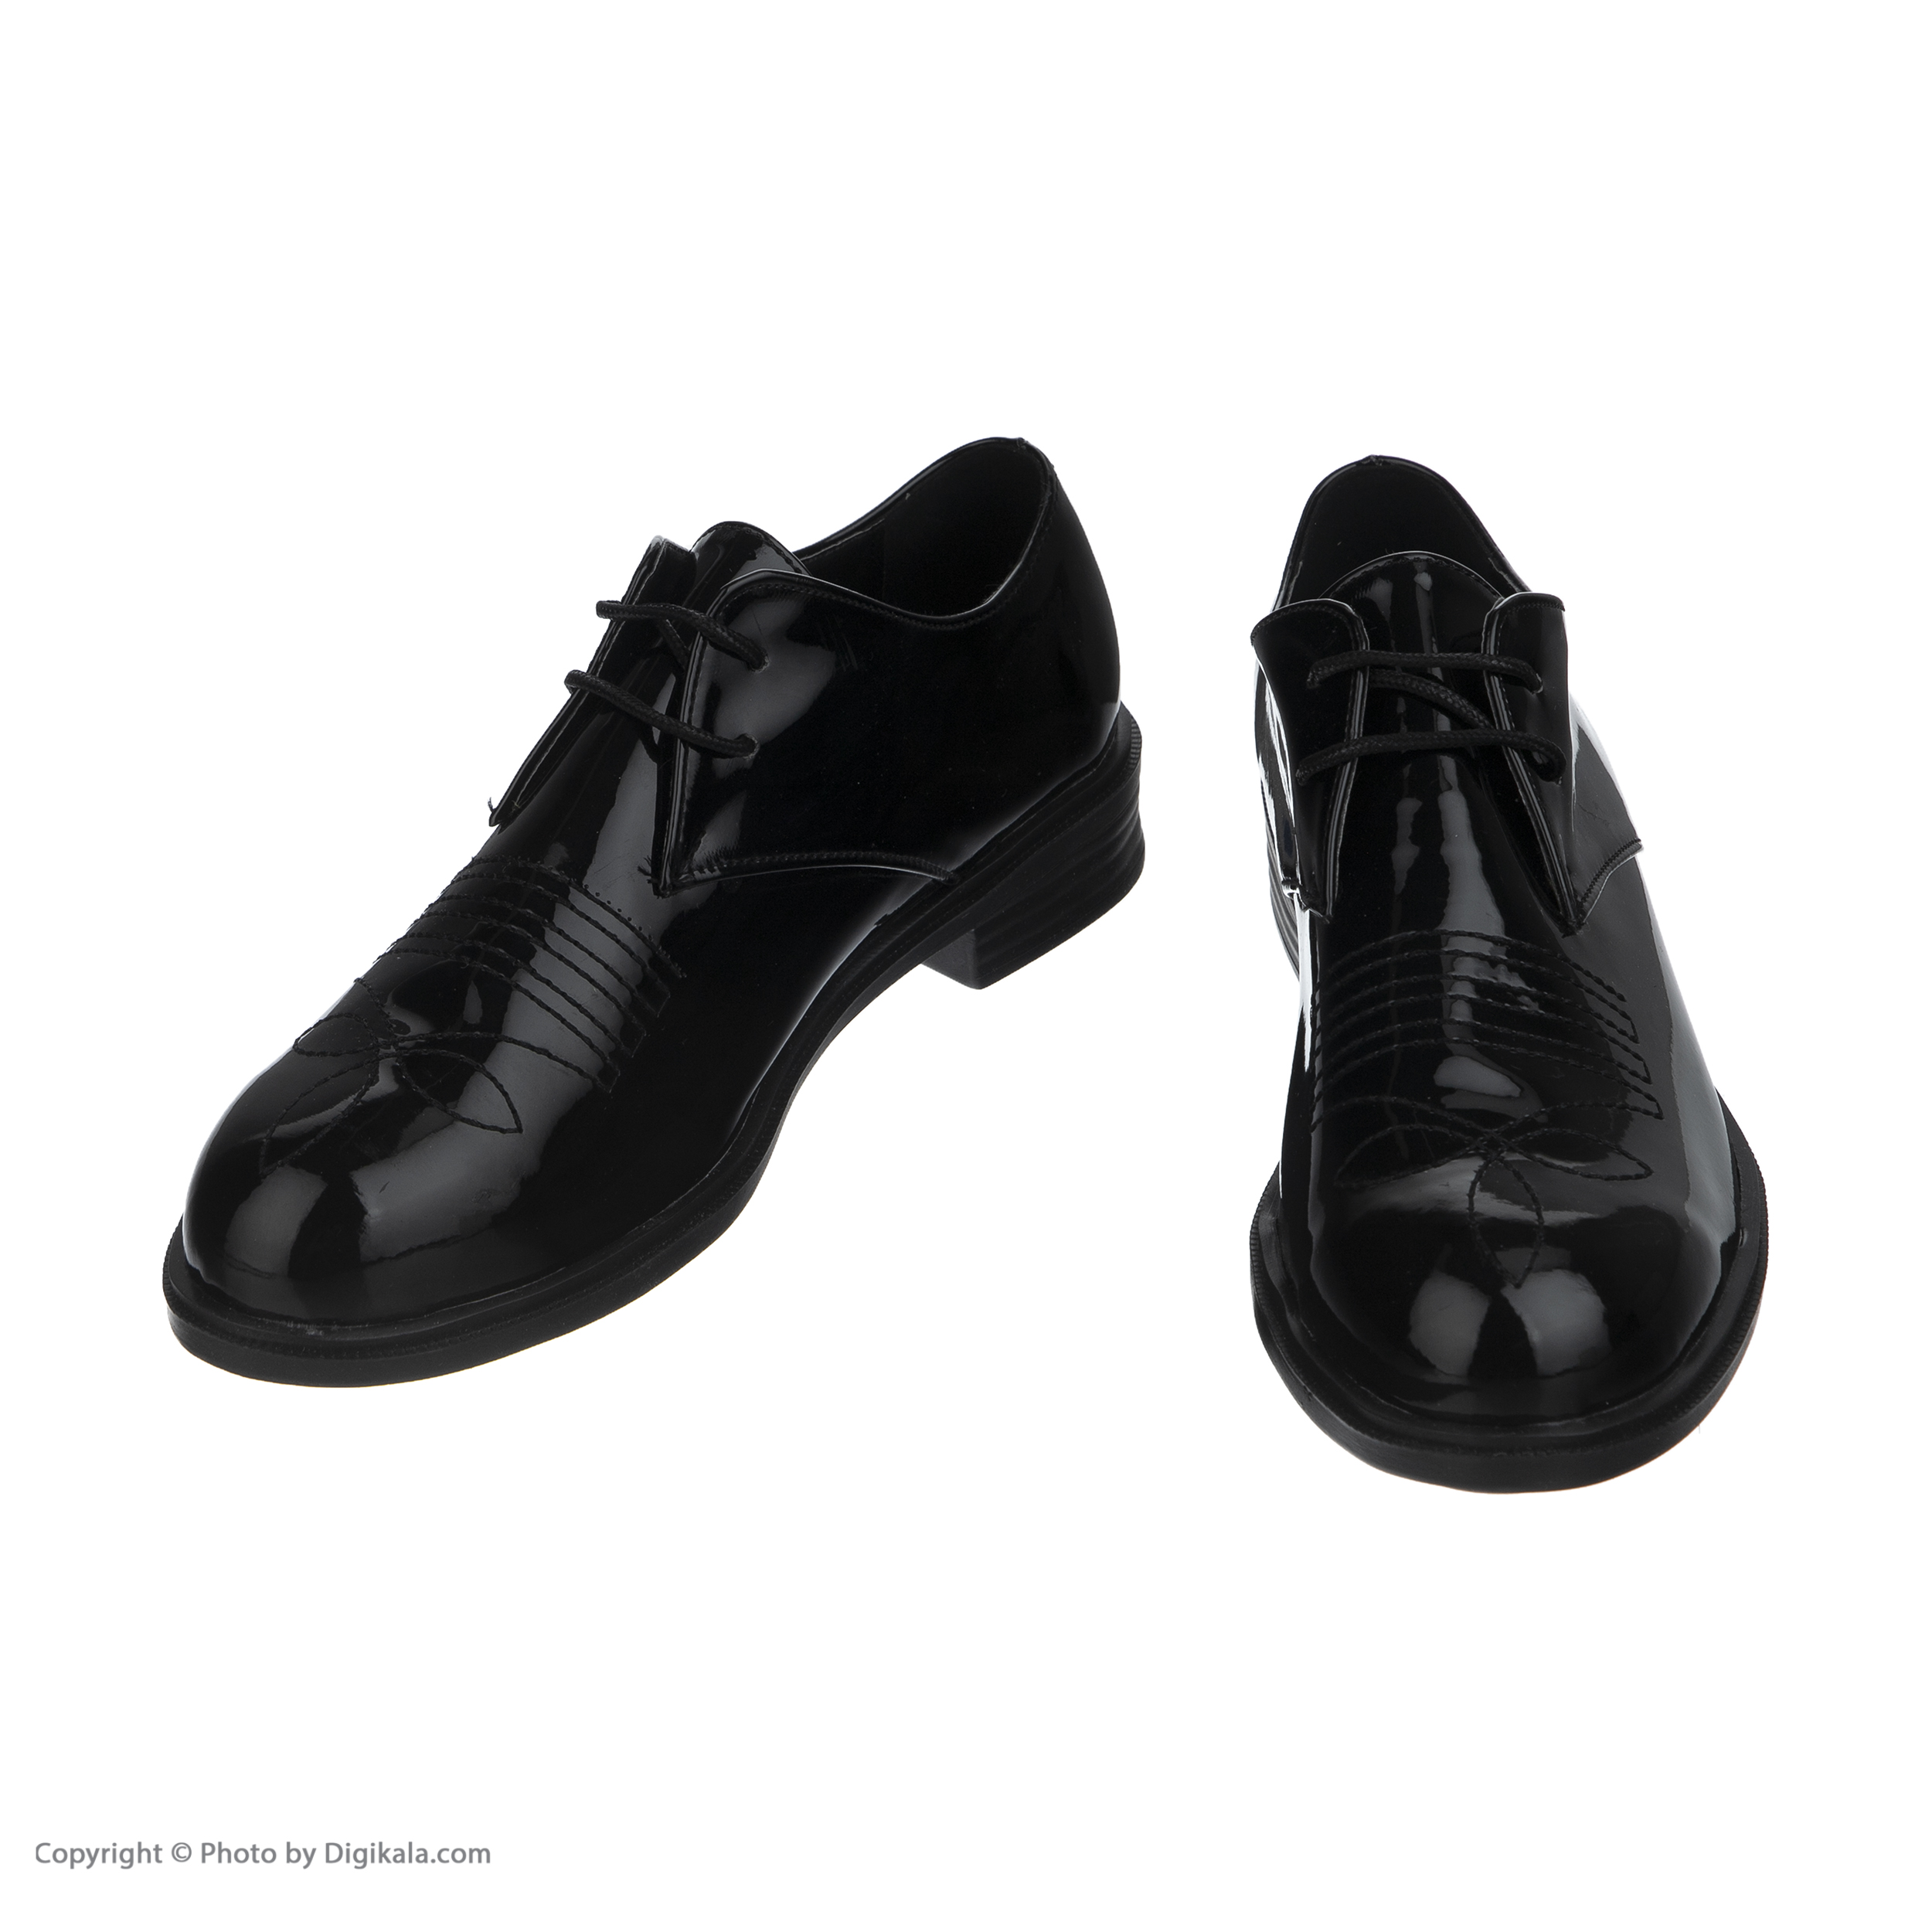  کفش مردانه لبتو مدل 1058-99